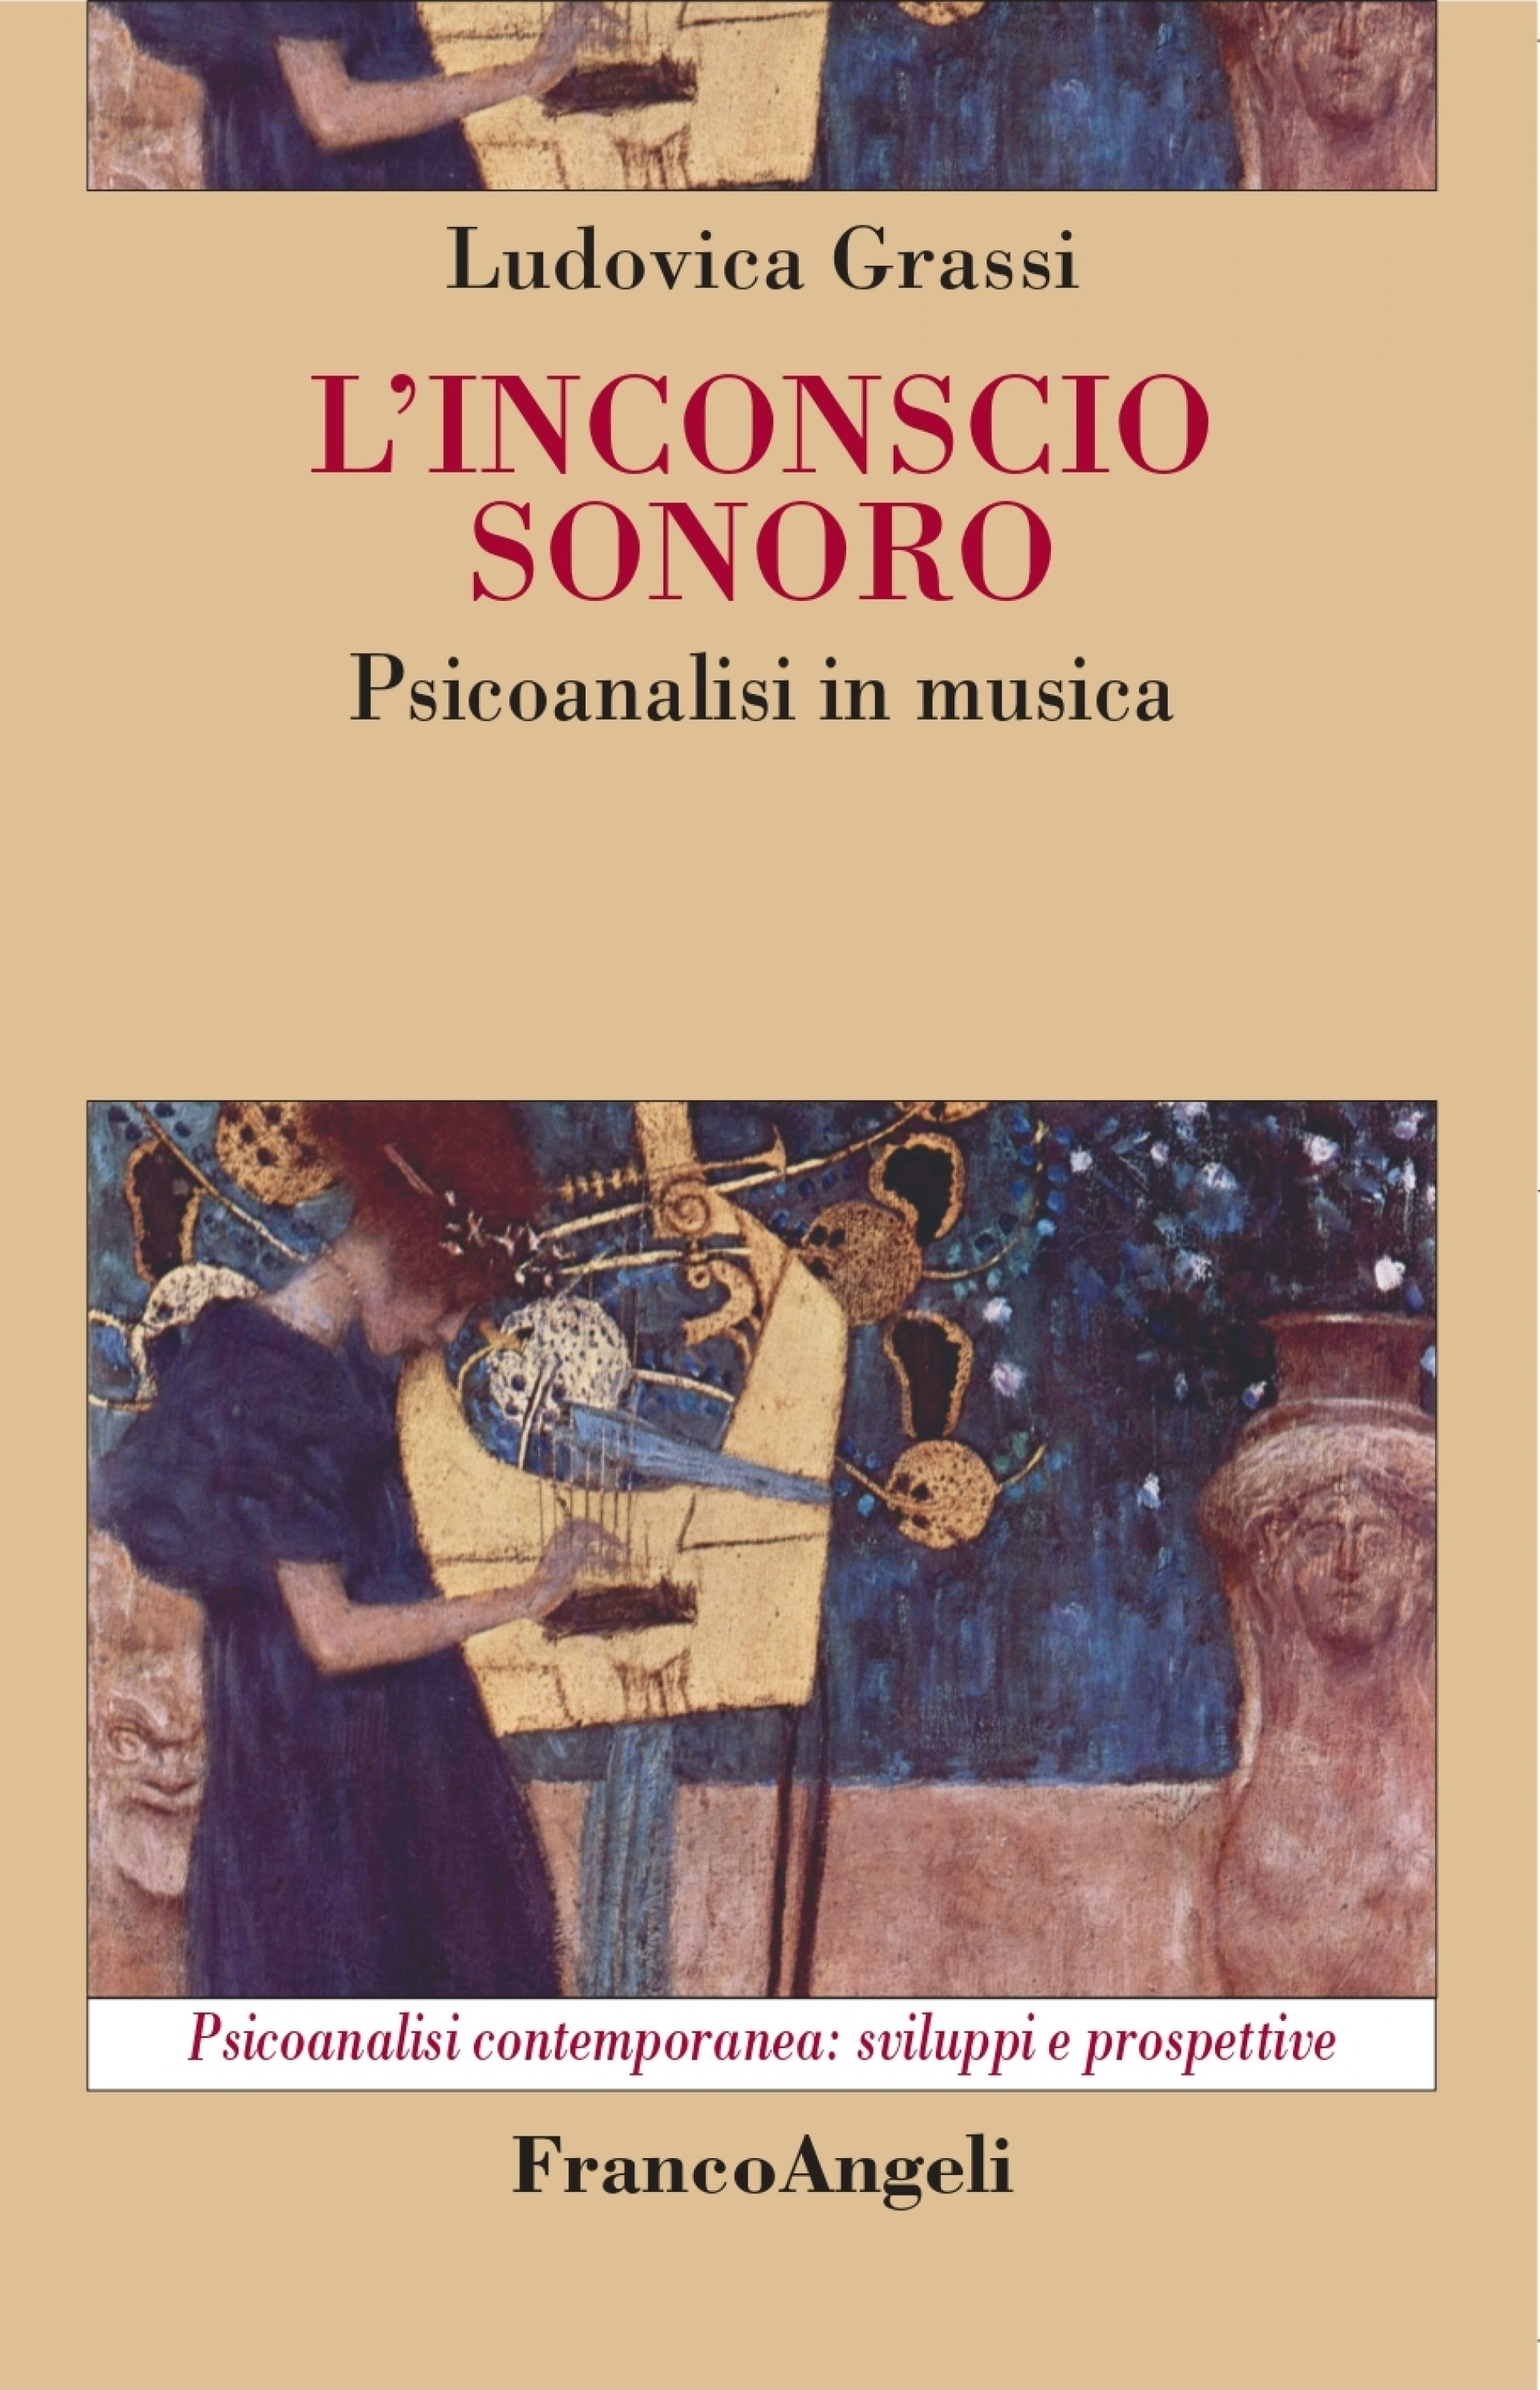 Ludovica Grassi : la Musica, il Silenzio e la Psicoanalisi.